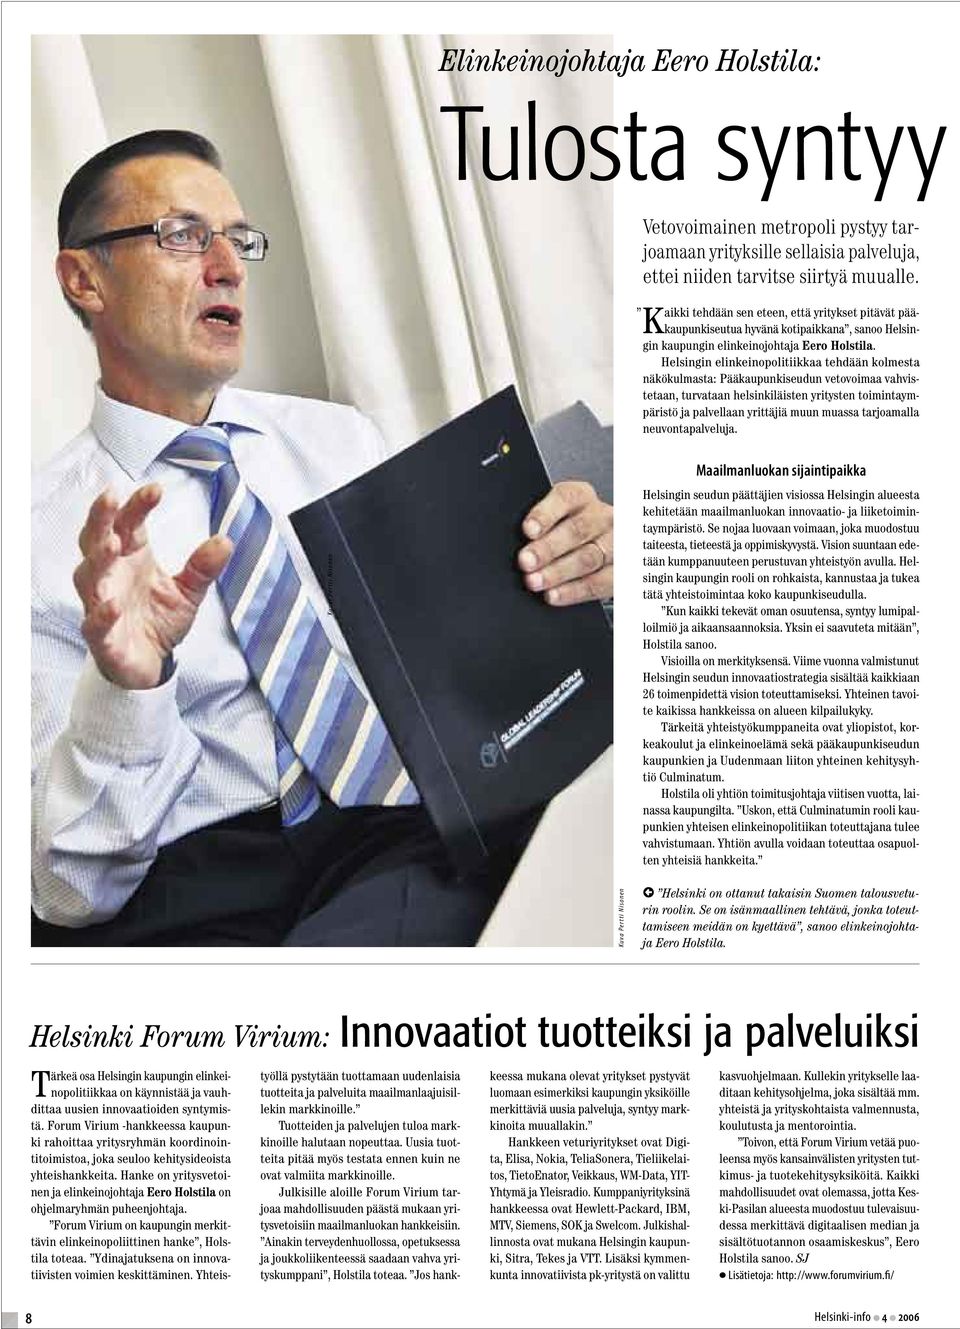 Helsingin elinkeinopolitiikkaa tehdään kolmesta näkökulmasta: Pääkaupunkiseudun vetovoimaa vahvistetaan, turvataan helsinkiläisten yritysten toimintaympäristö ja palvellaan yrittäjiä muun muassa